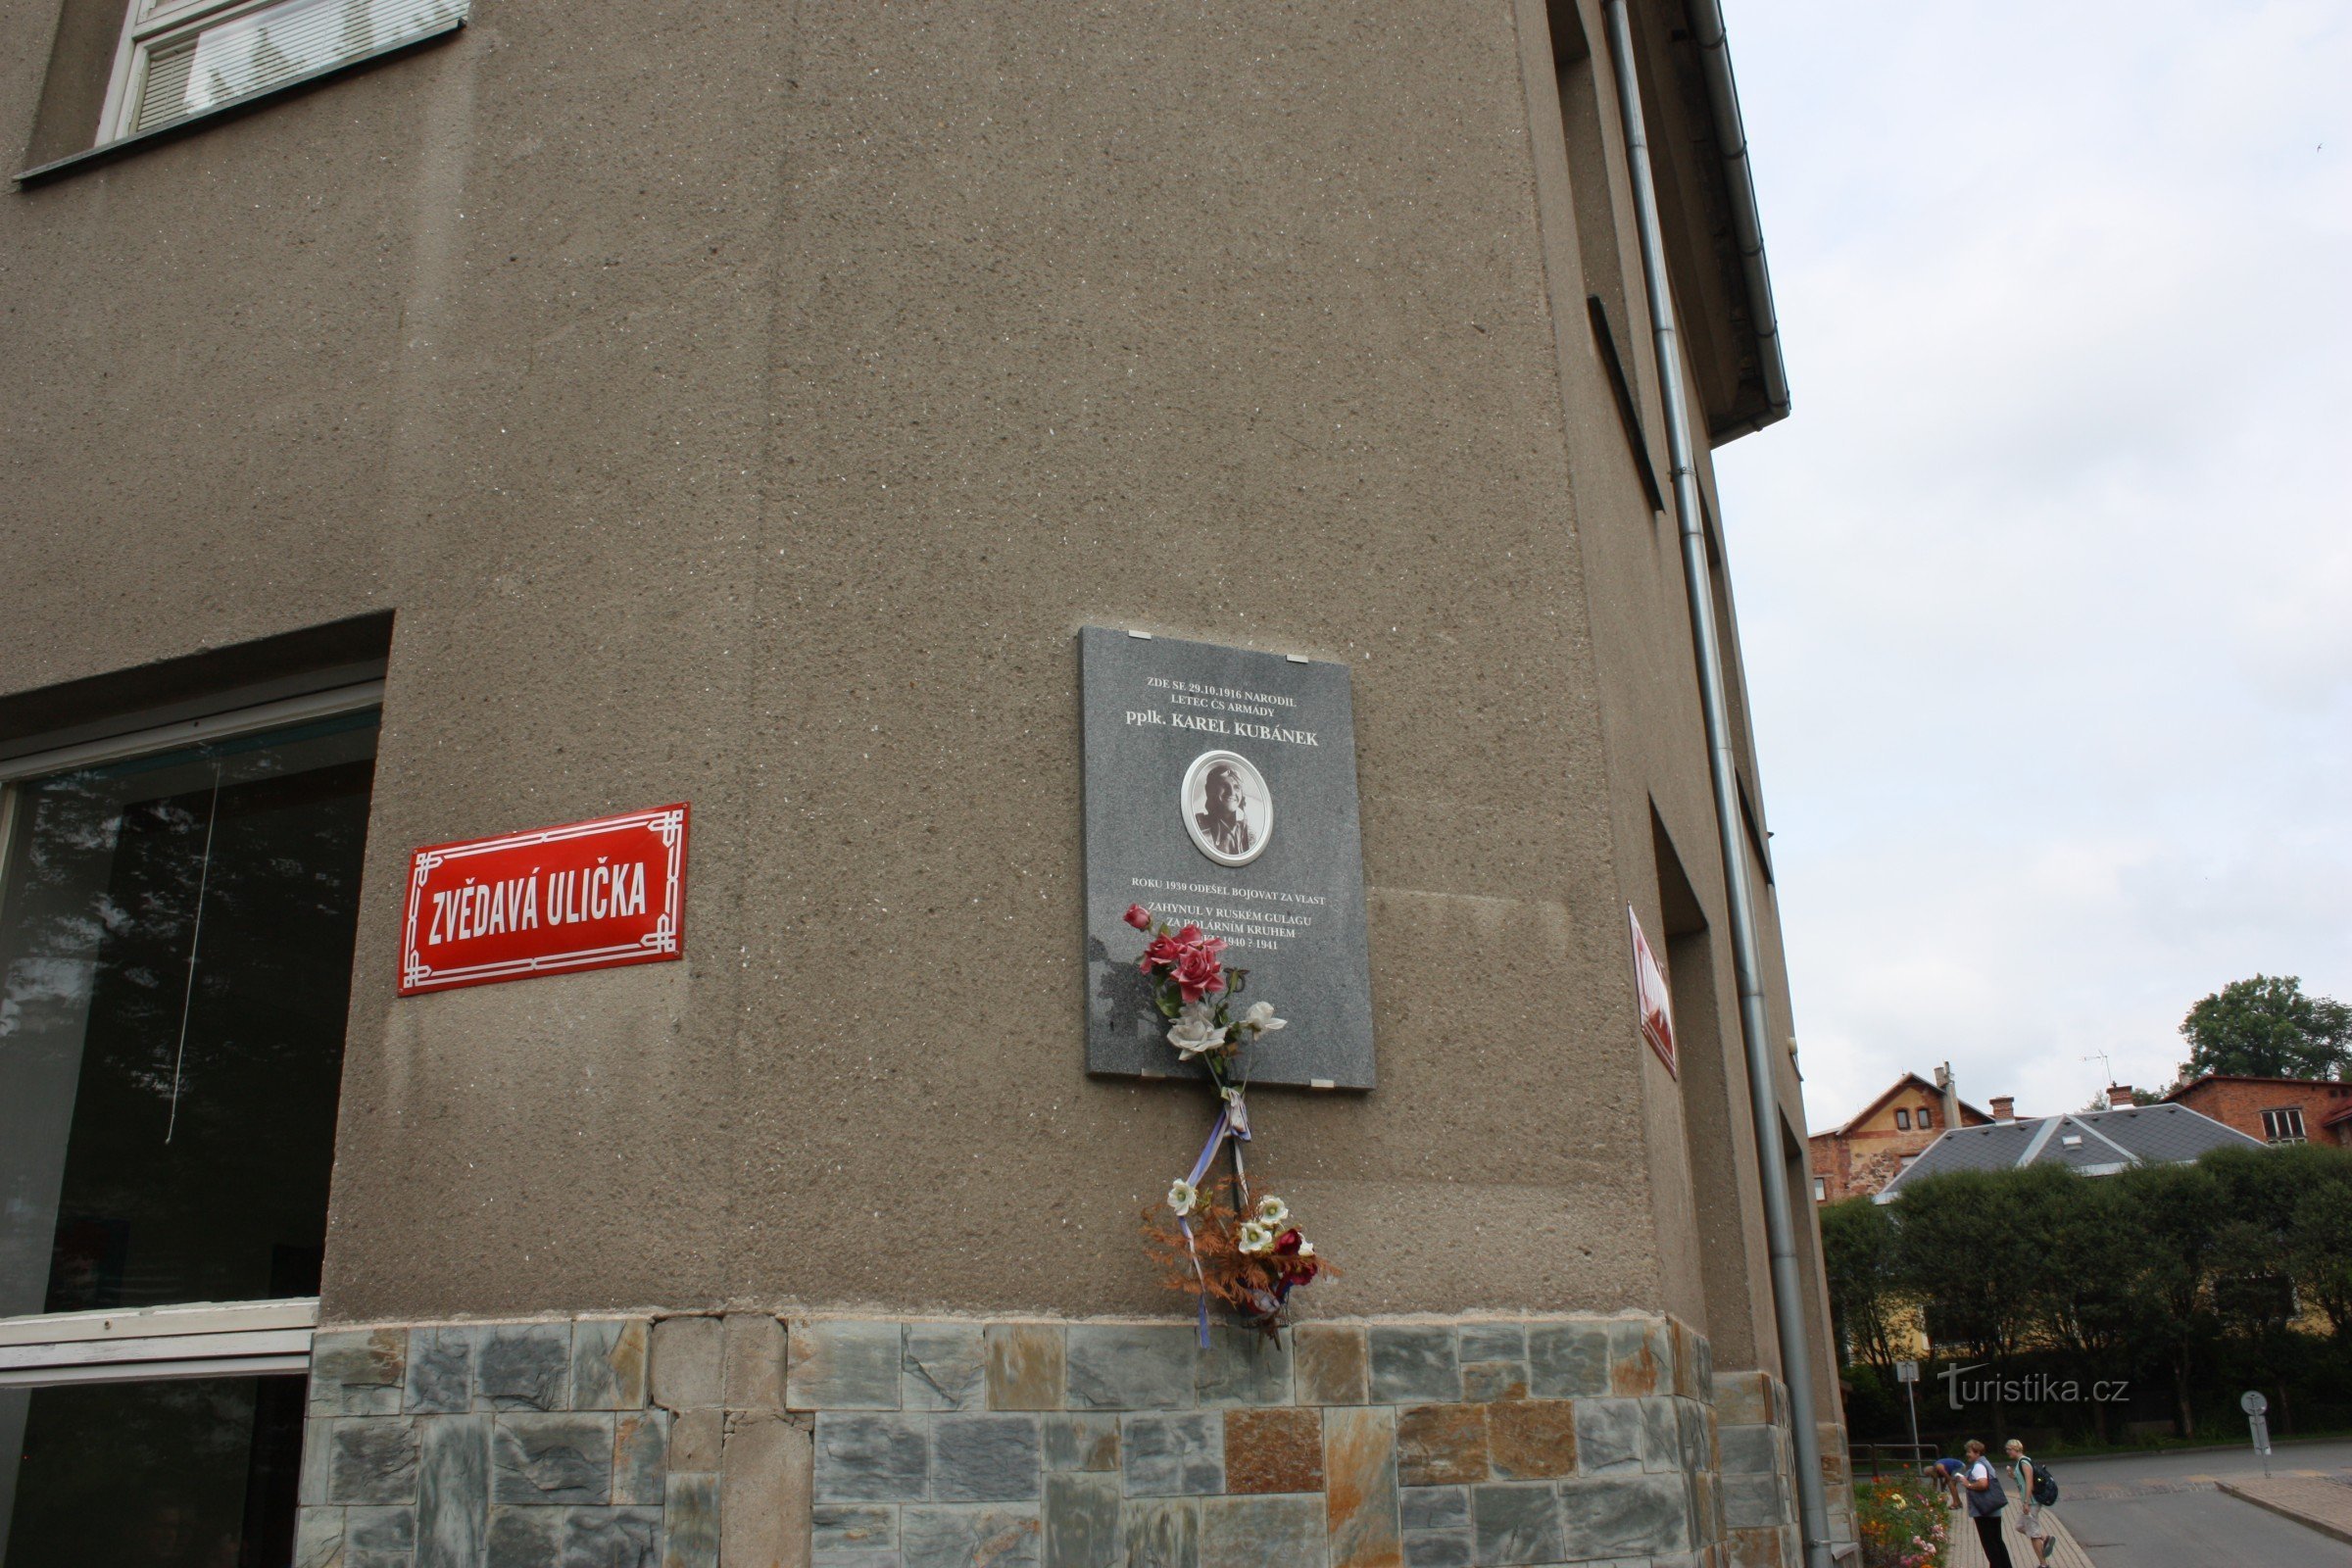 Меморіальна дошка на розі Zvědavá ulička в Jilemnice